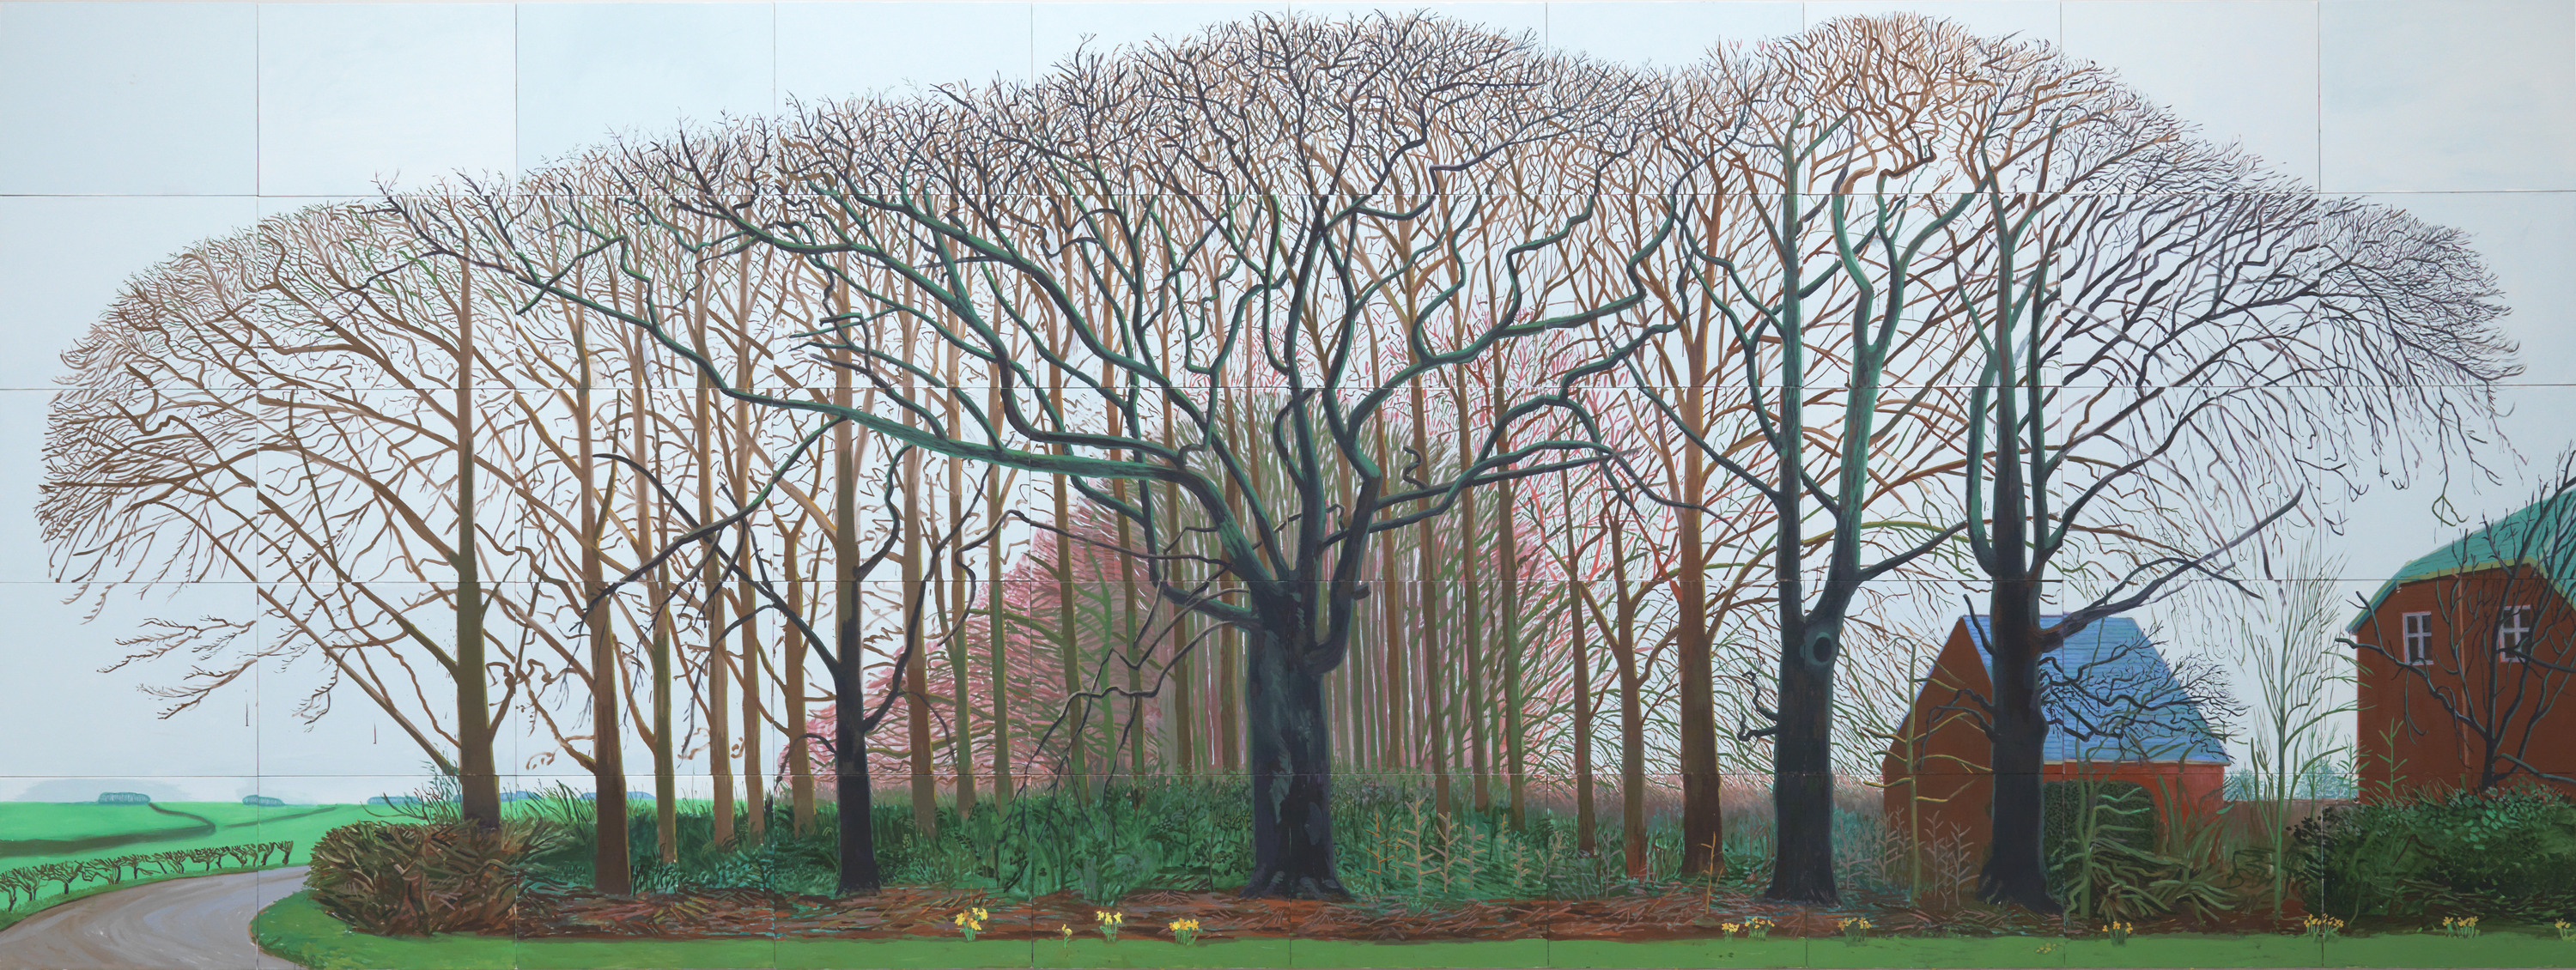 David Hockney, 와터 근처의 더 큰 나무들, 2007.jpg